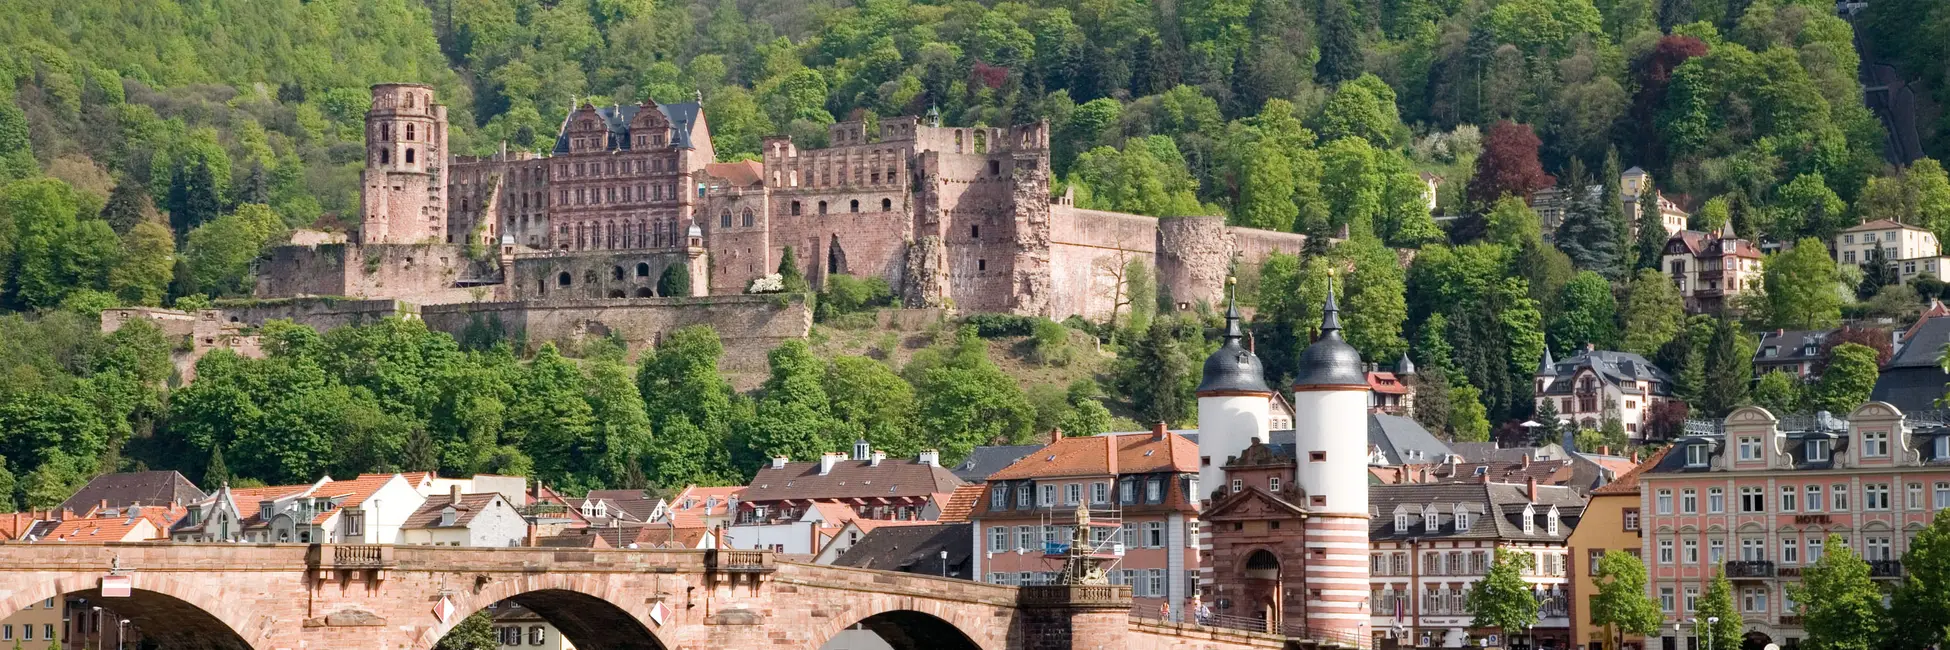 La ville d'Heidelberg 